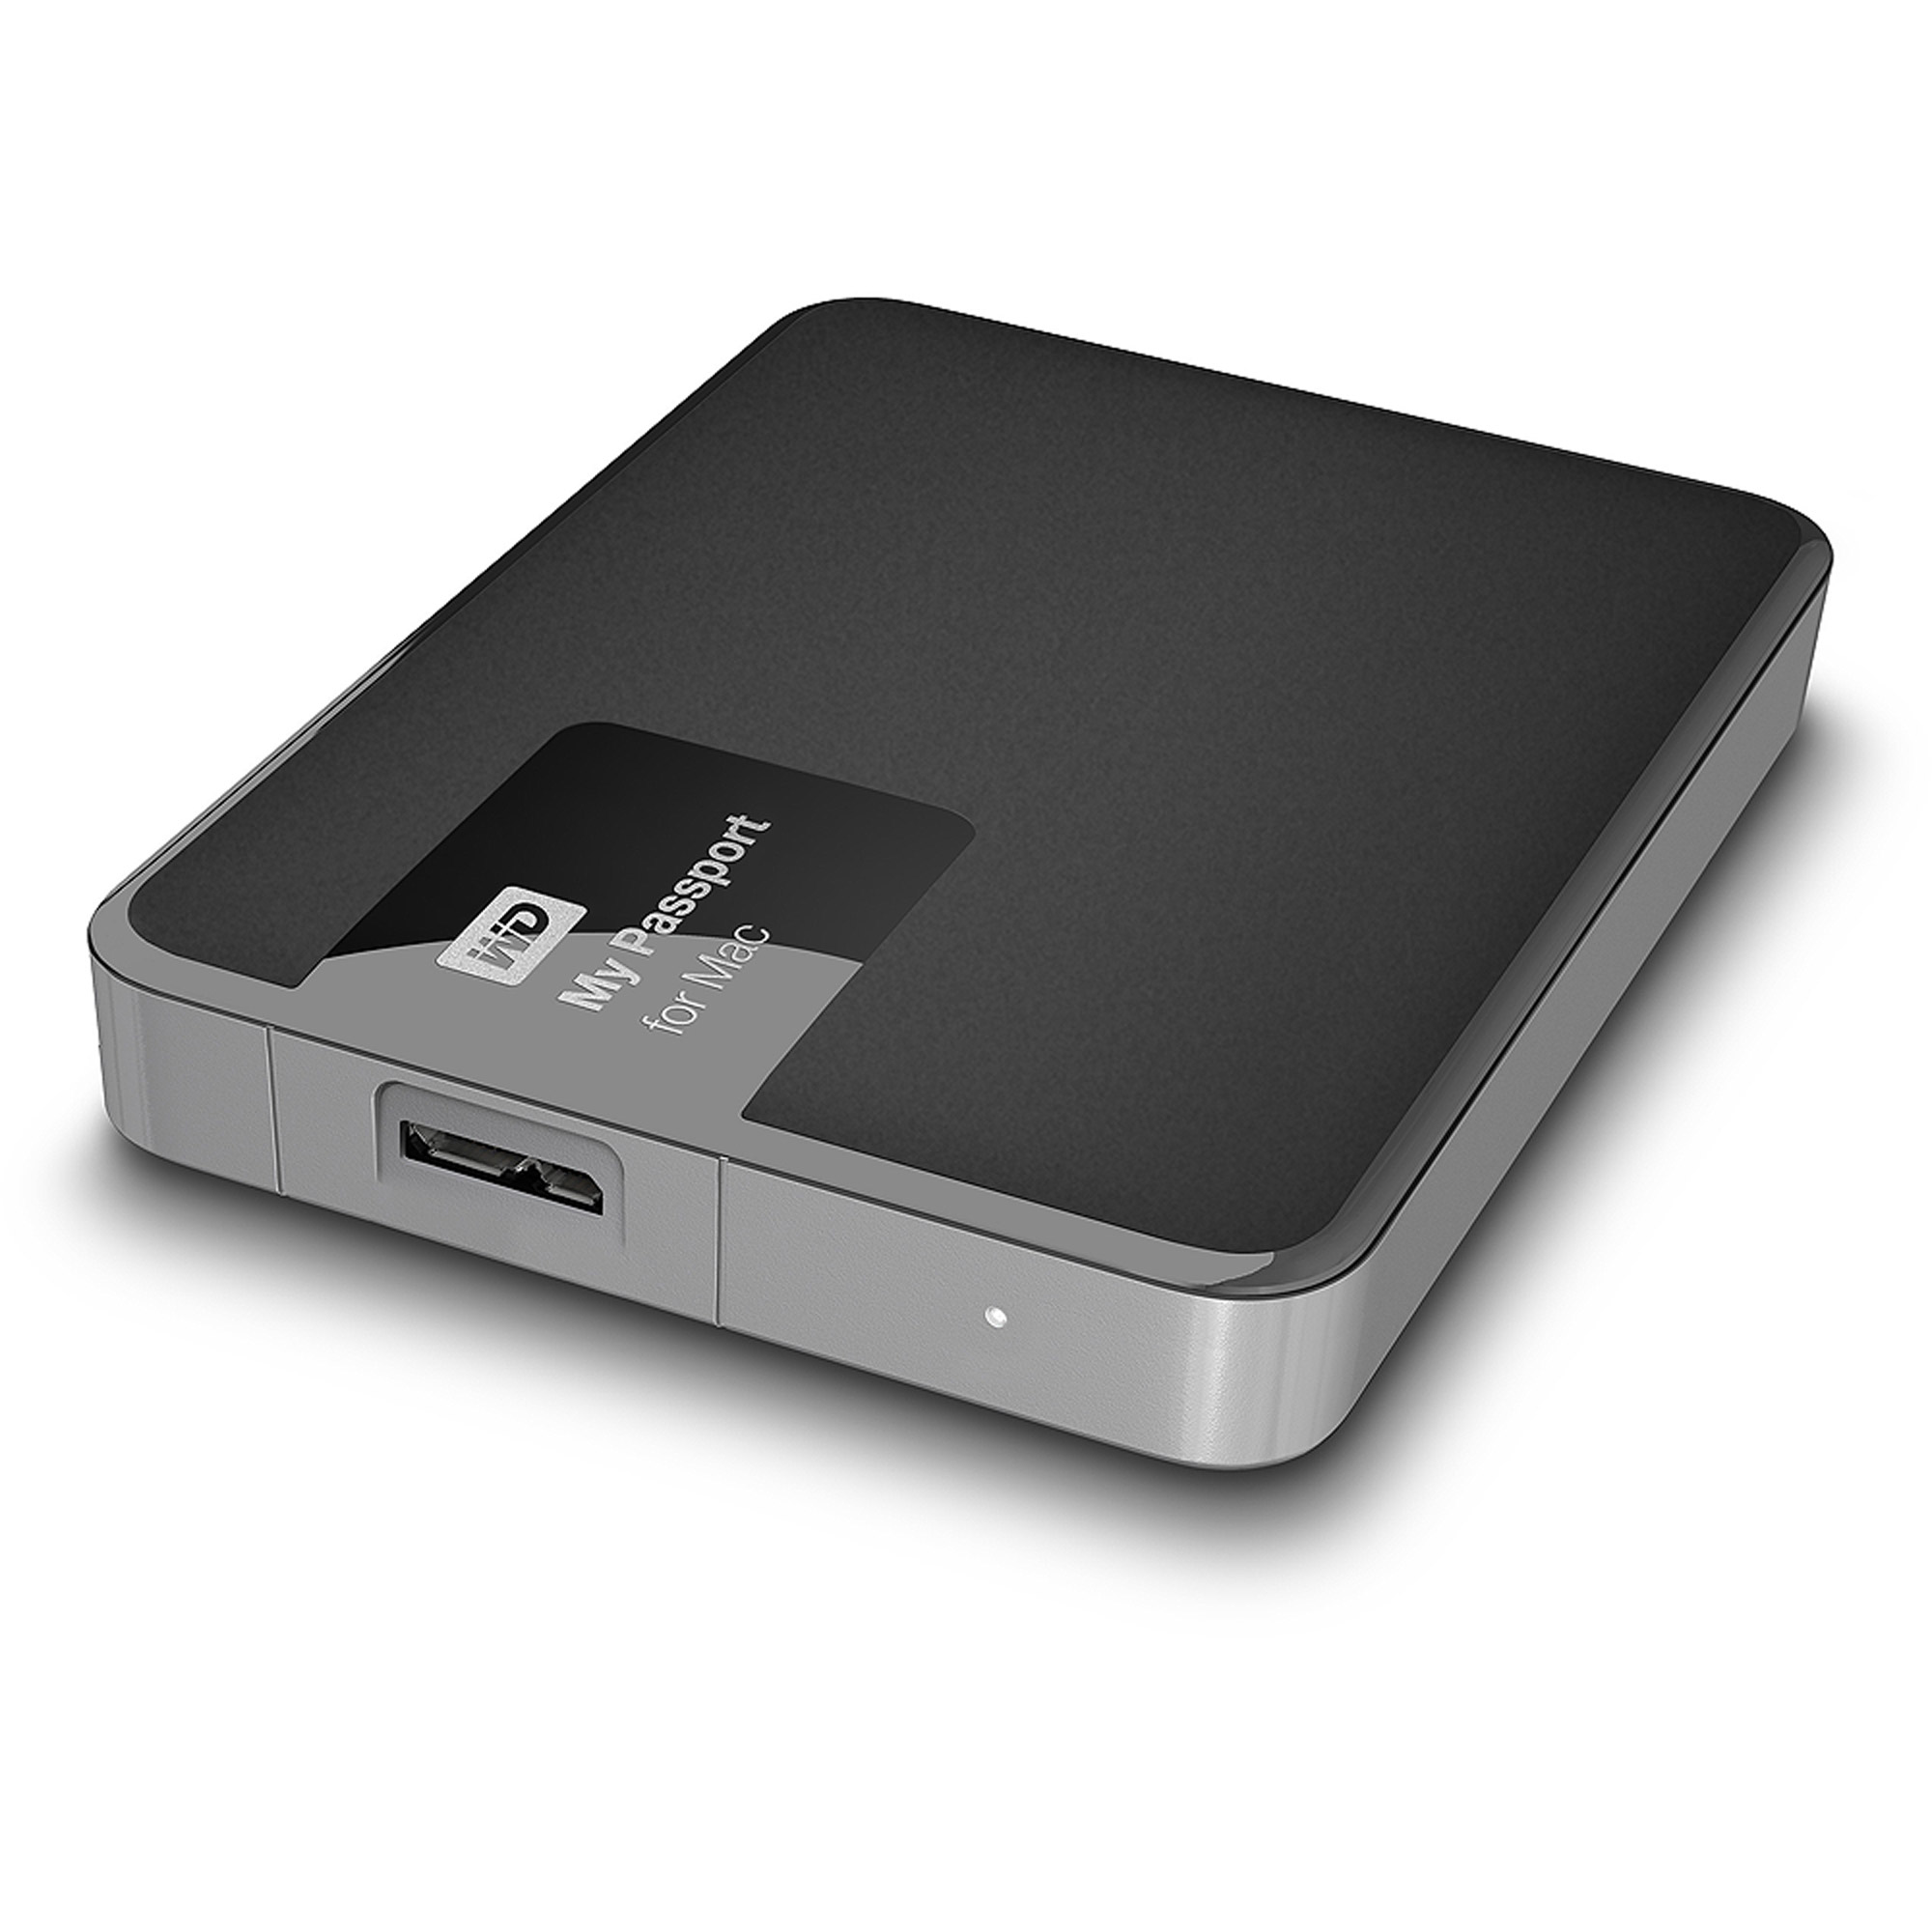 installation software wd external hard drive mac